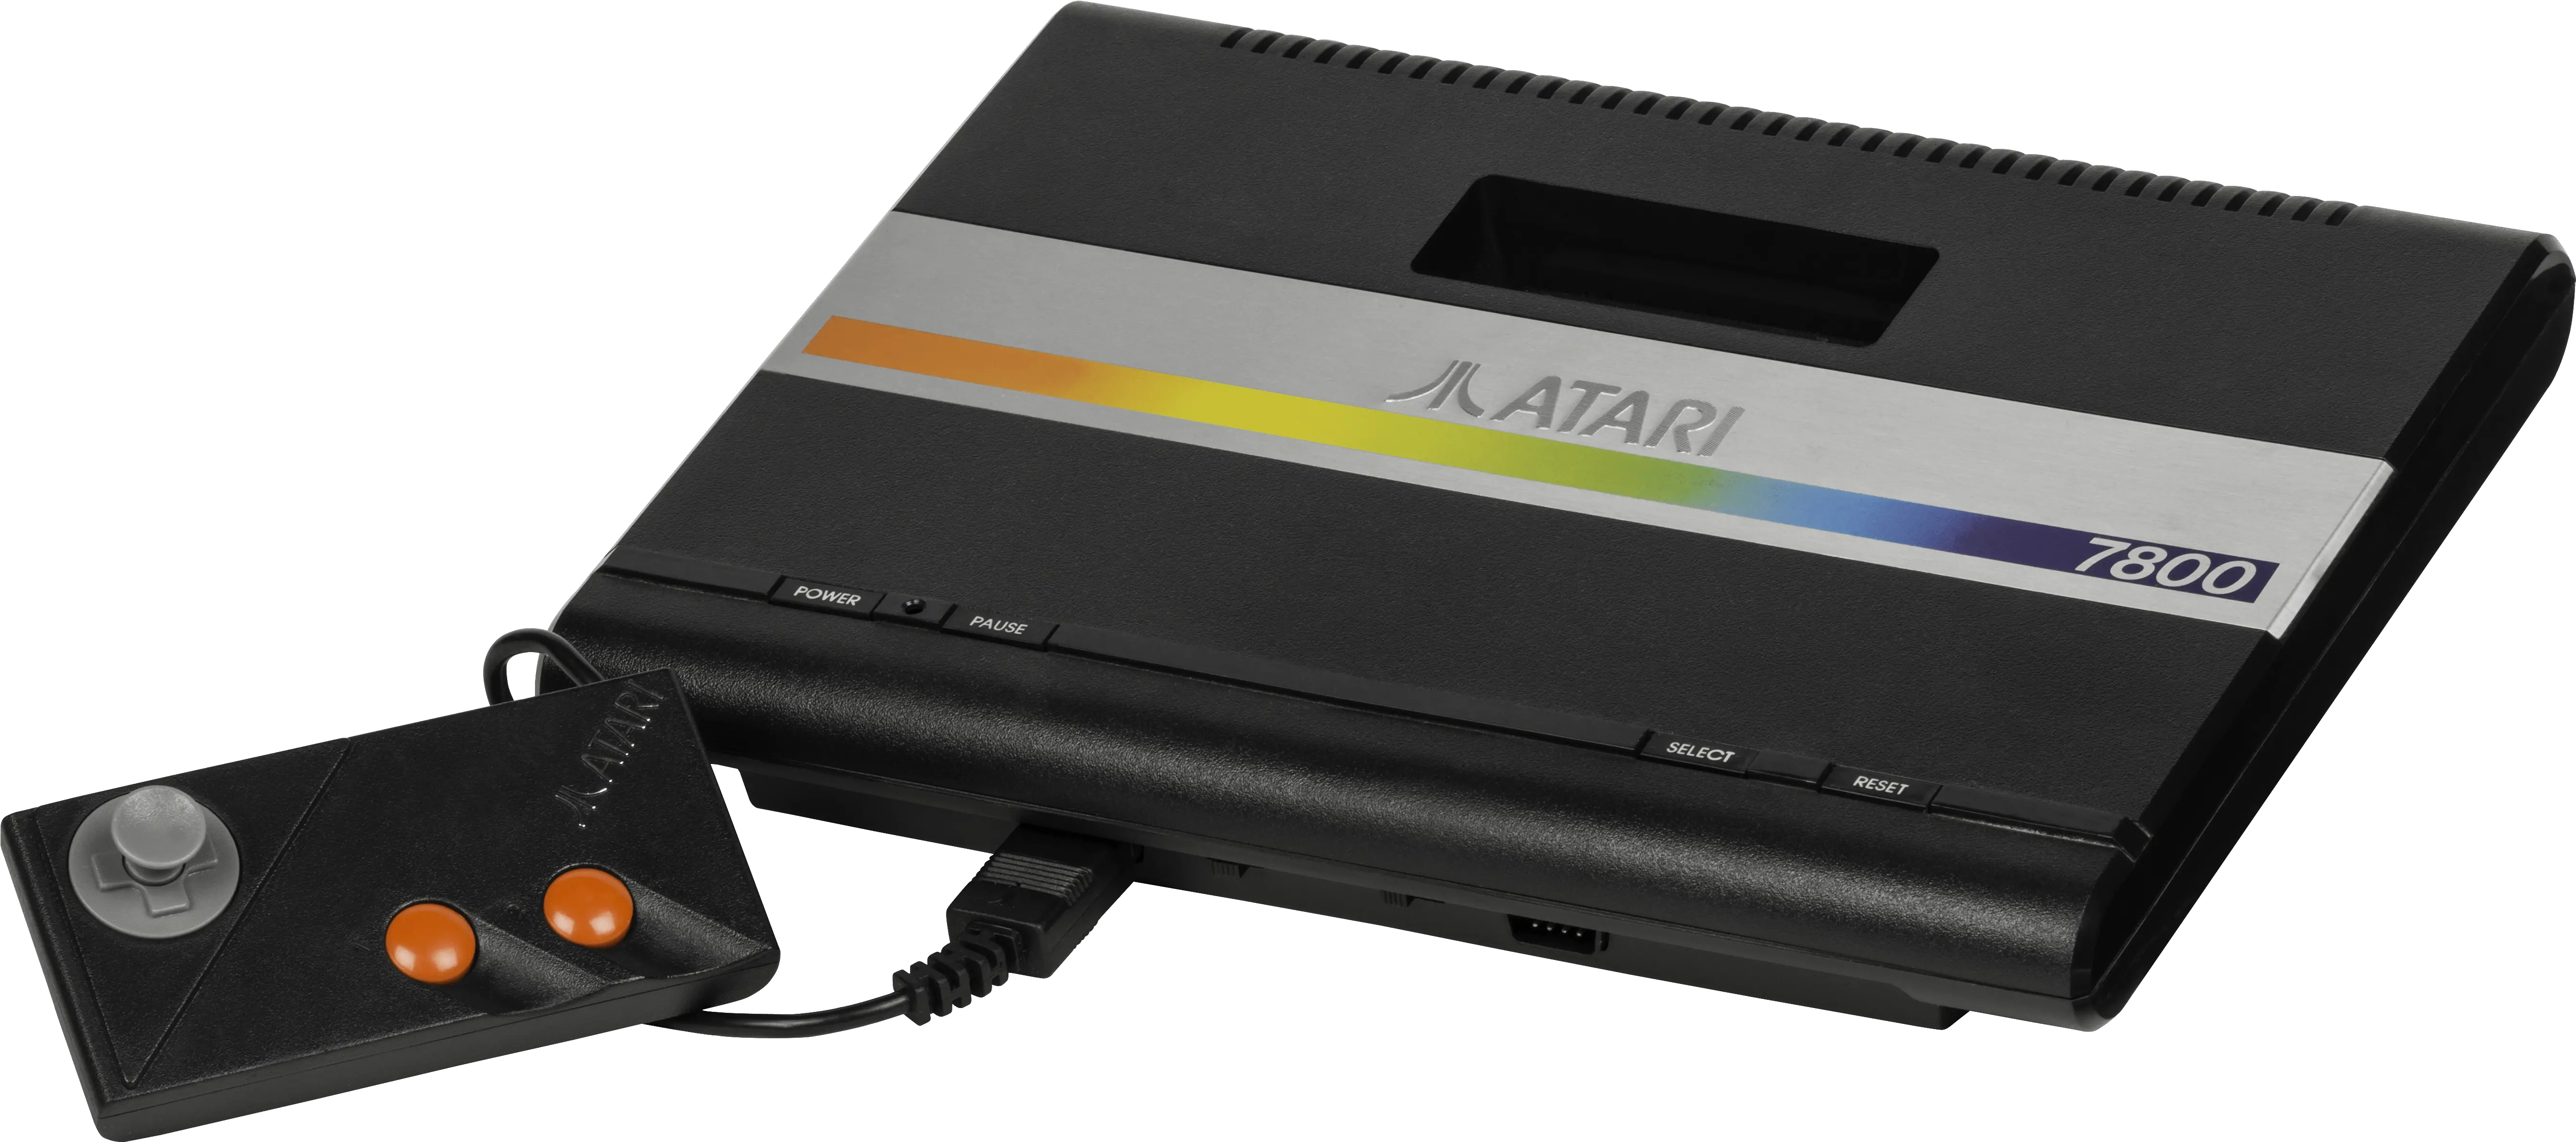 Download Atari 7800 De Atari 7800 Atari Png Atari Png